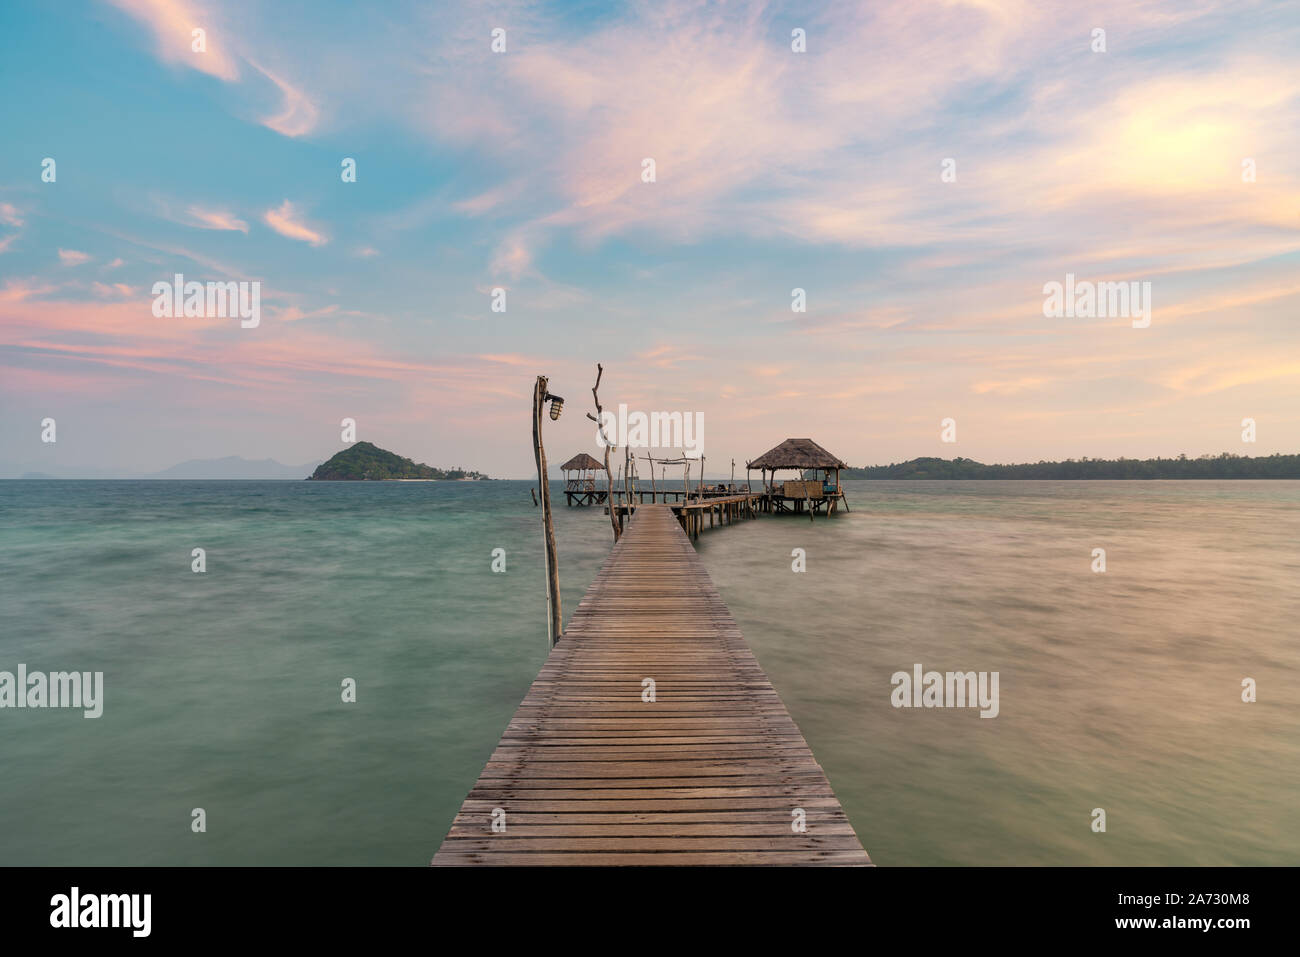 Holz- bar in Meer und Hütte mit Sonnenaufgang Himmel in Koh Mak Trat, Thailand. Sommer, Reisen, Ferien und Urlaub. Entspannen Sie sich und Reisen auf See anhand von quantitativen Simulatio Stockfoto